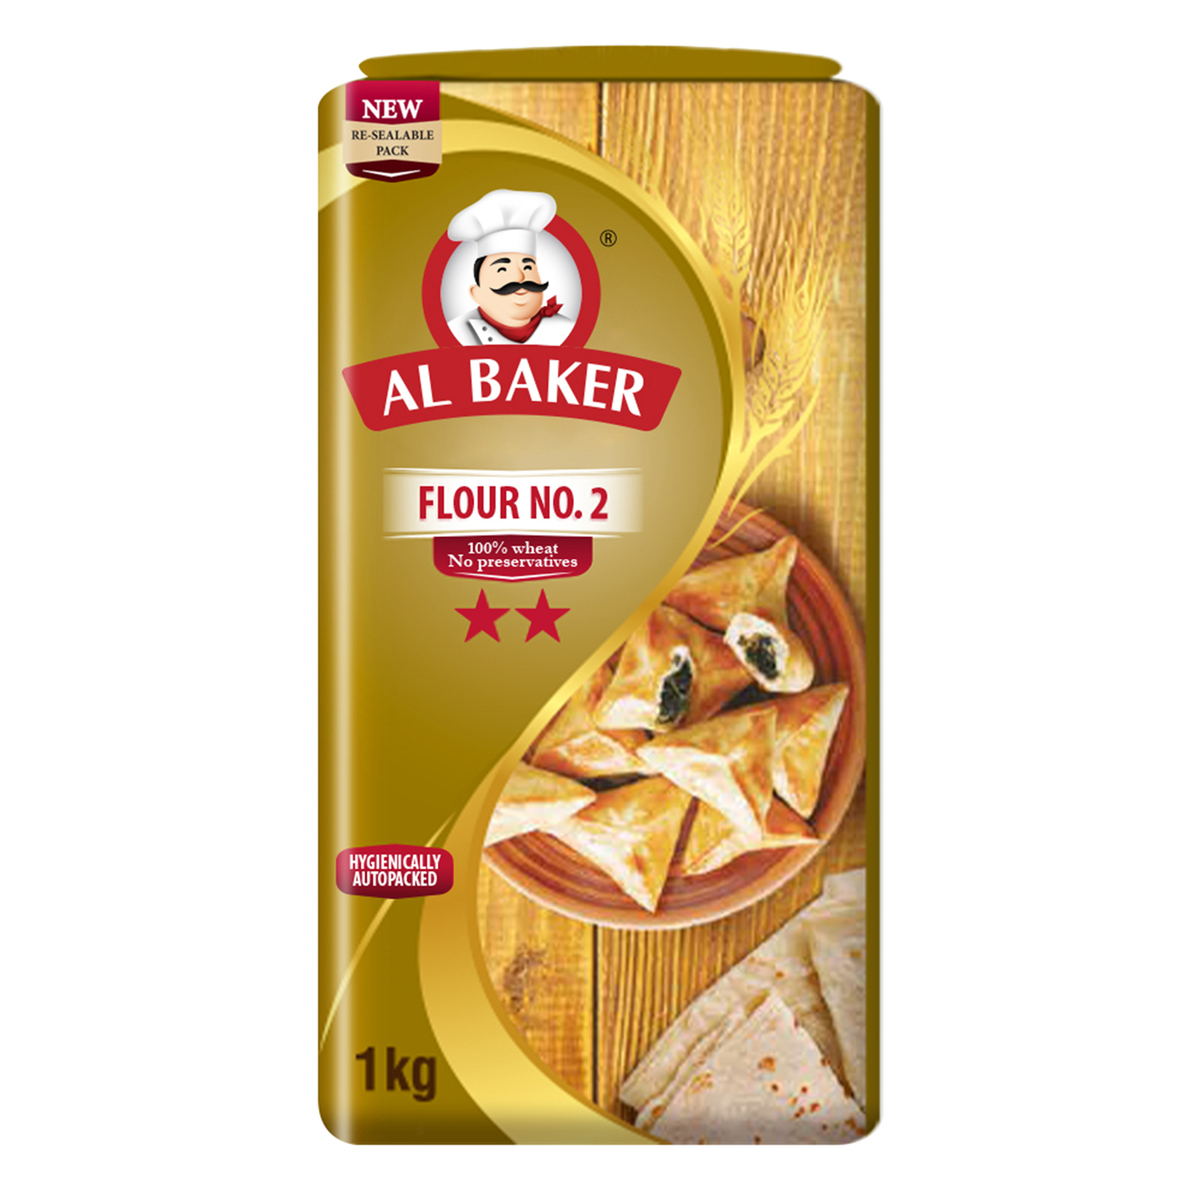 Al Baker Flour No.2 1 kg